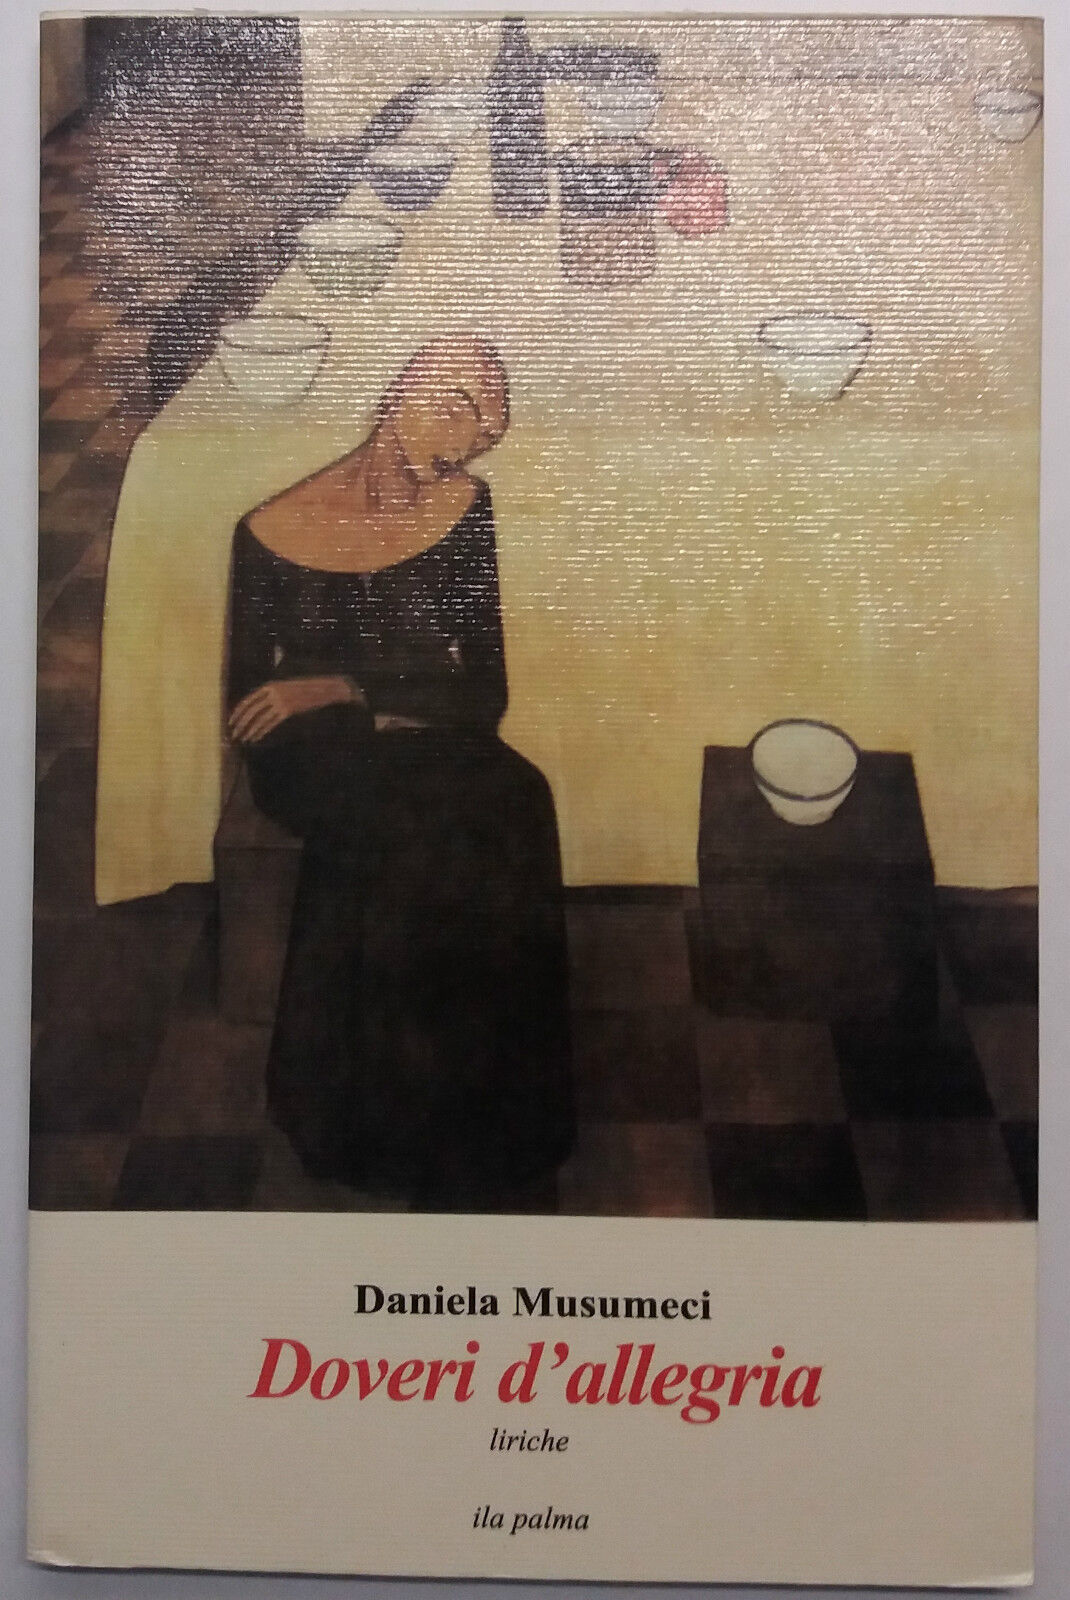 Doveri d'allegria, Liriche - Daniela Musumeci - Ila Palma - 2006 - G